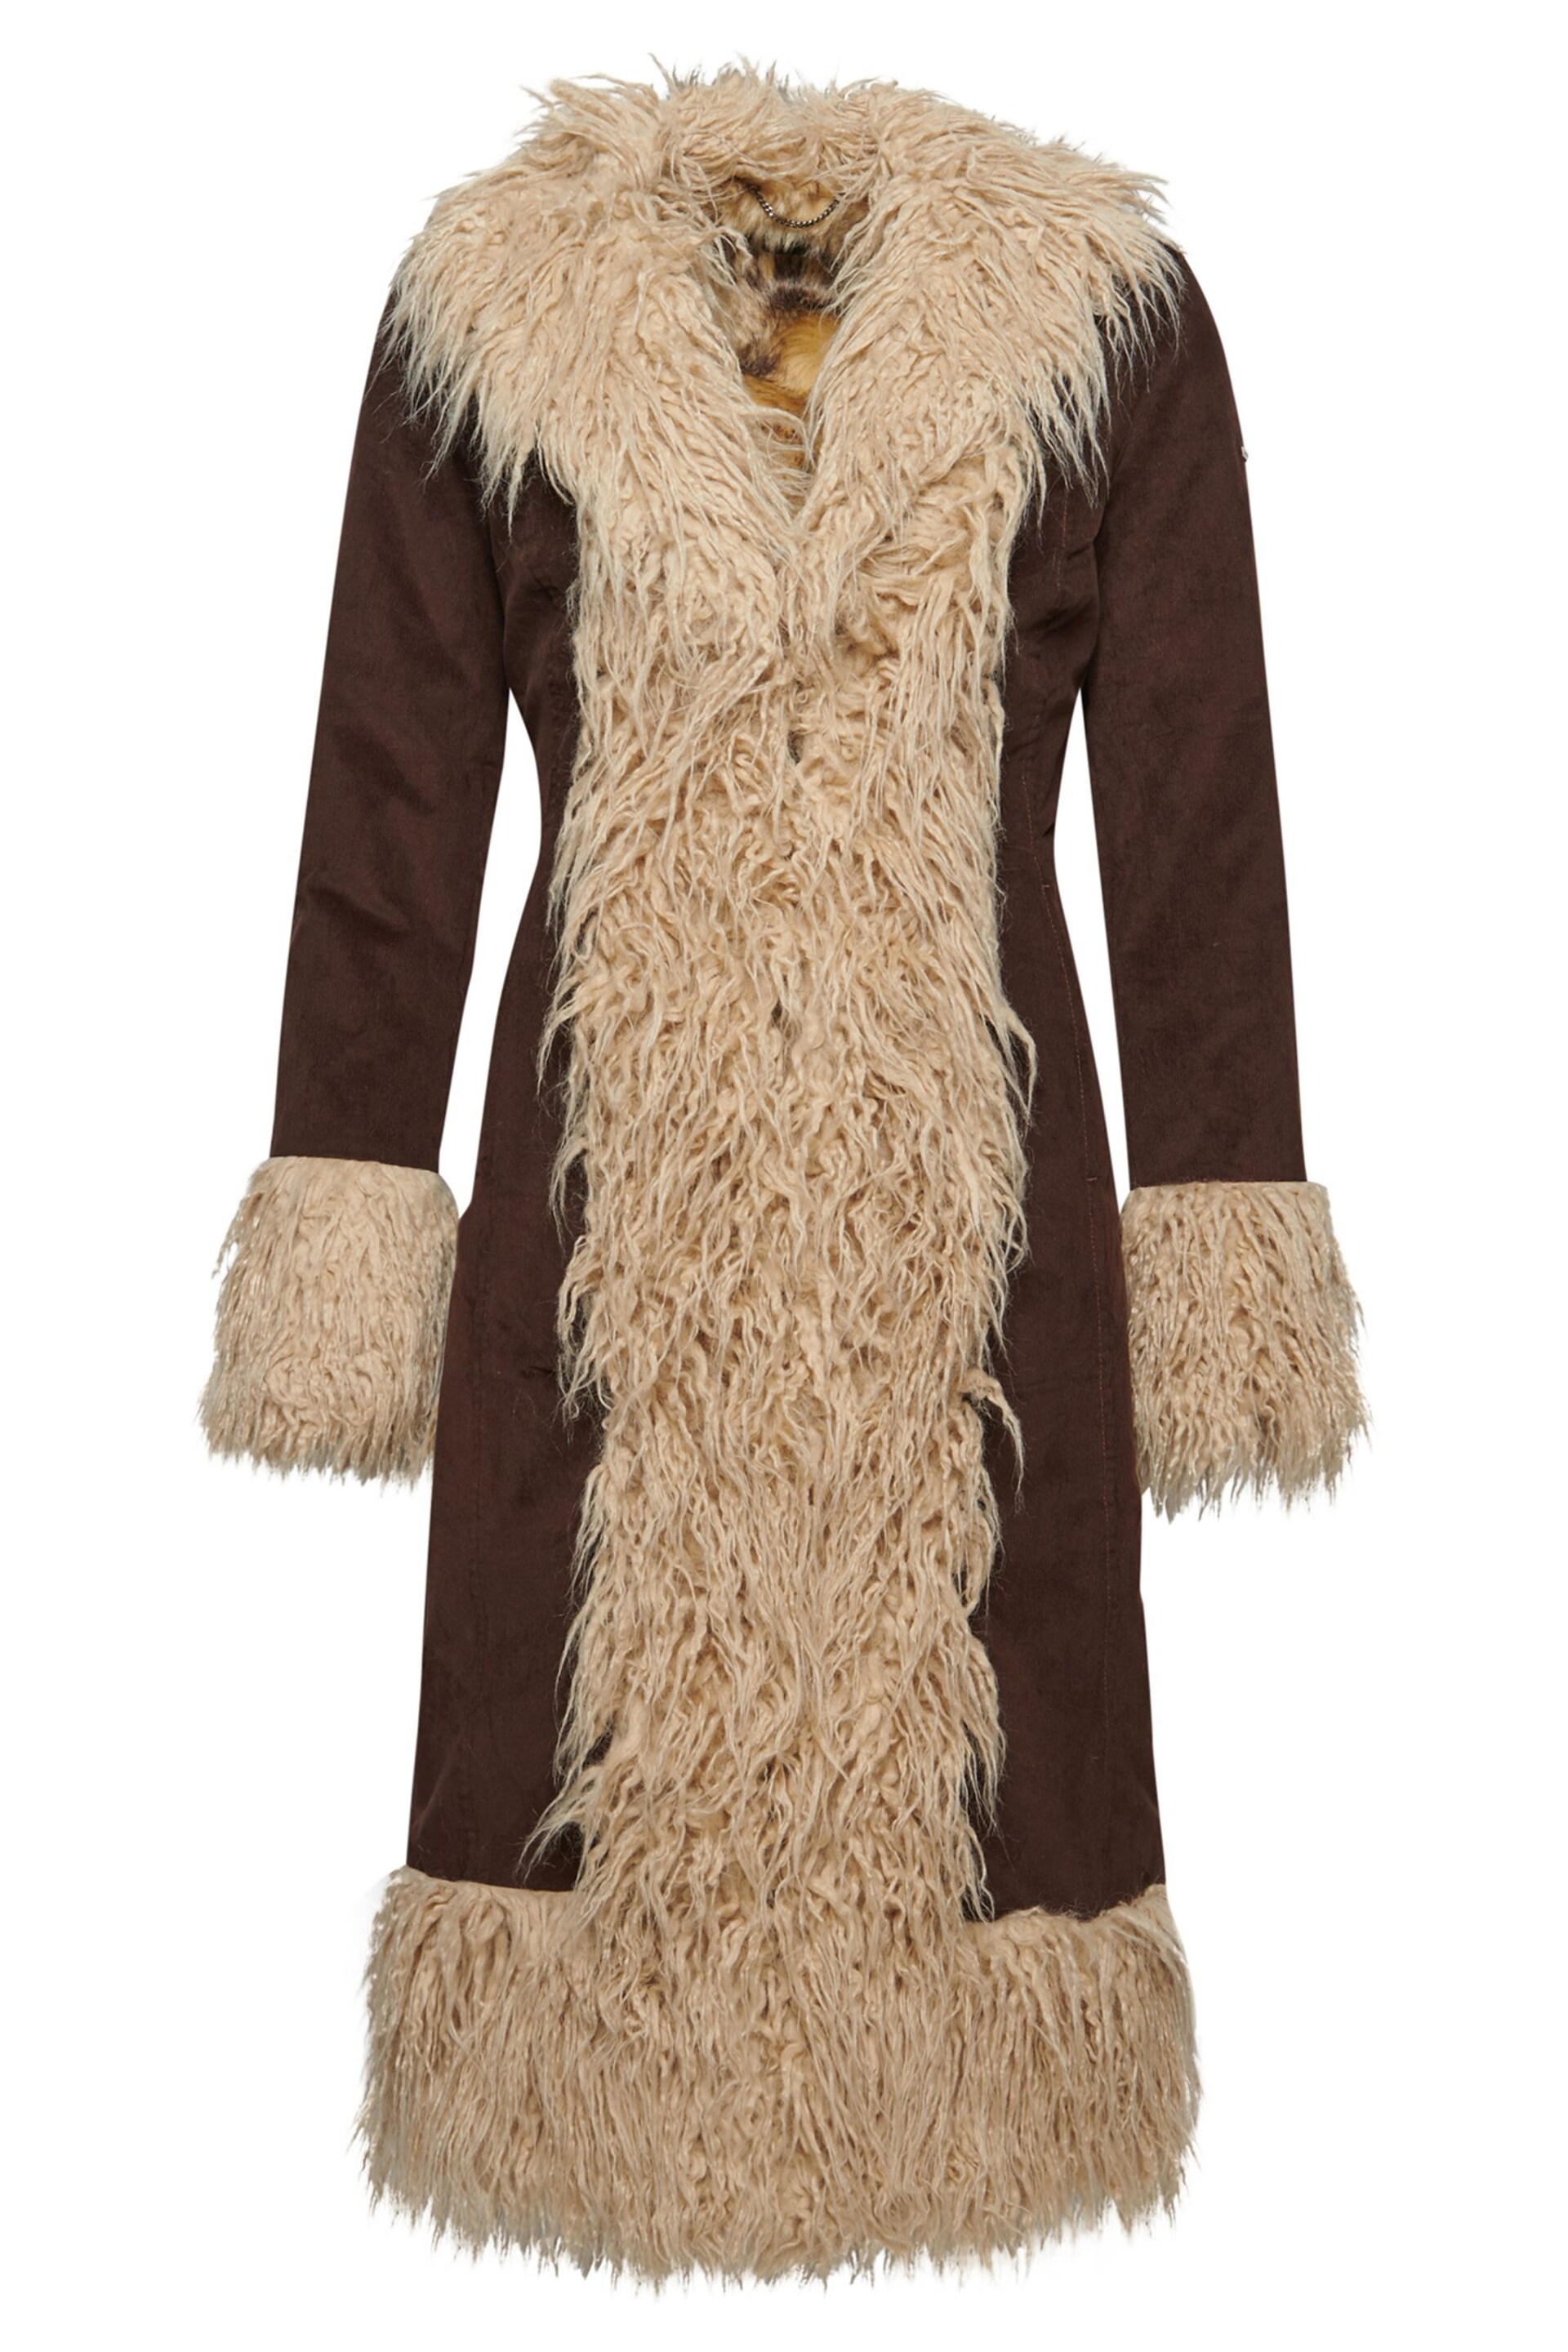 Superdry Dark Brown Faux Fur Lined Longline Afghan Coat - Image 6 of 8